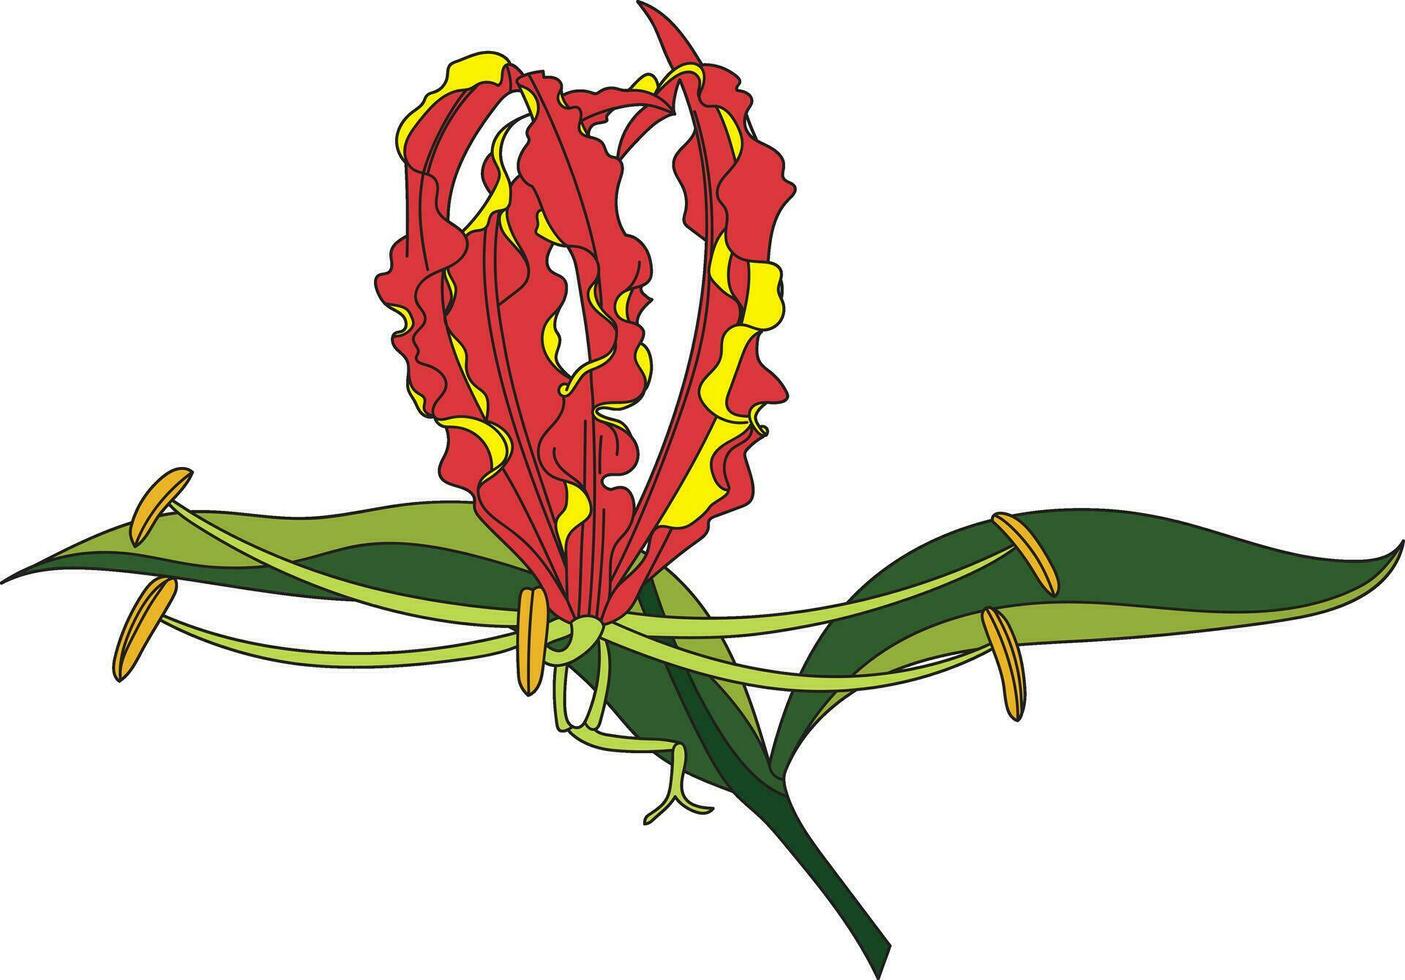 abstrakt av flamma lilja, klättrande lilja, turk's keps blomma med blad på vit bakgrund vektor